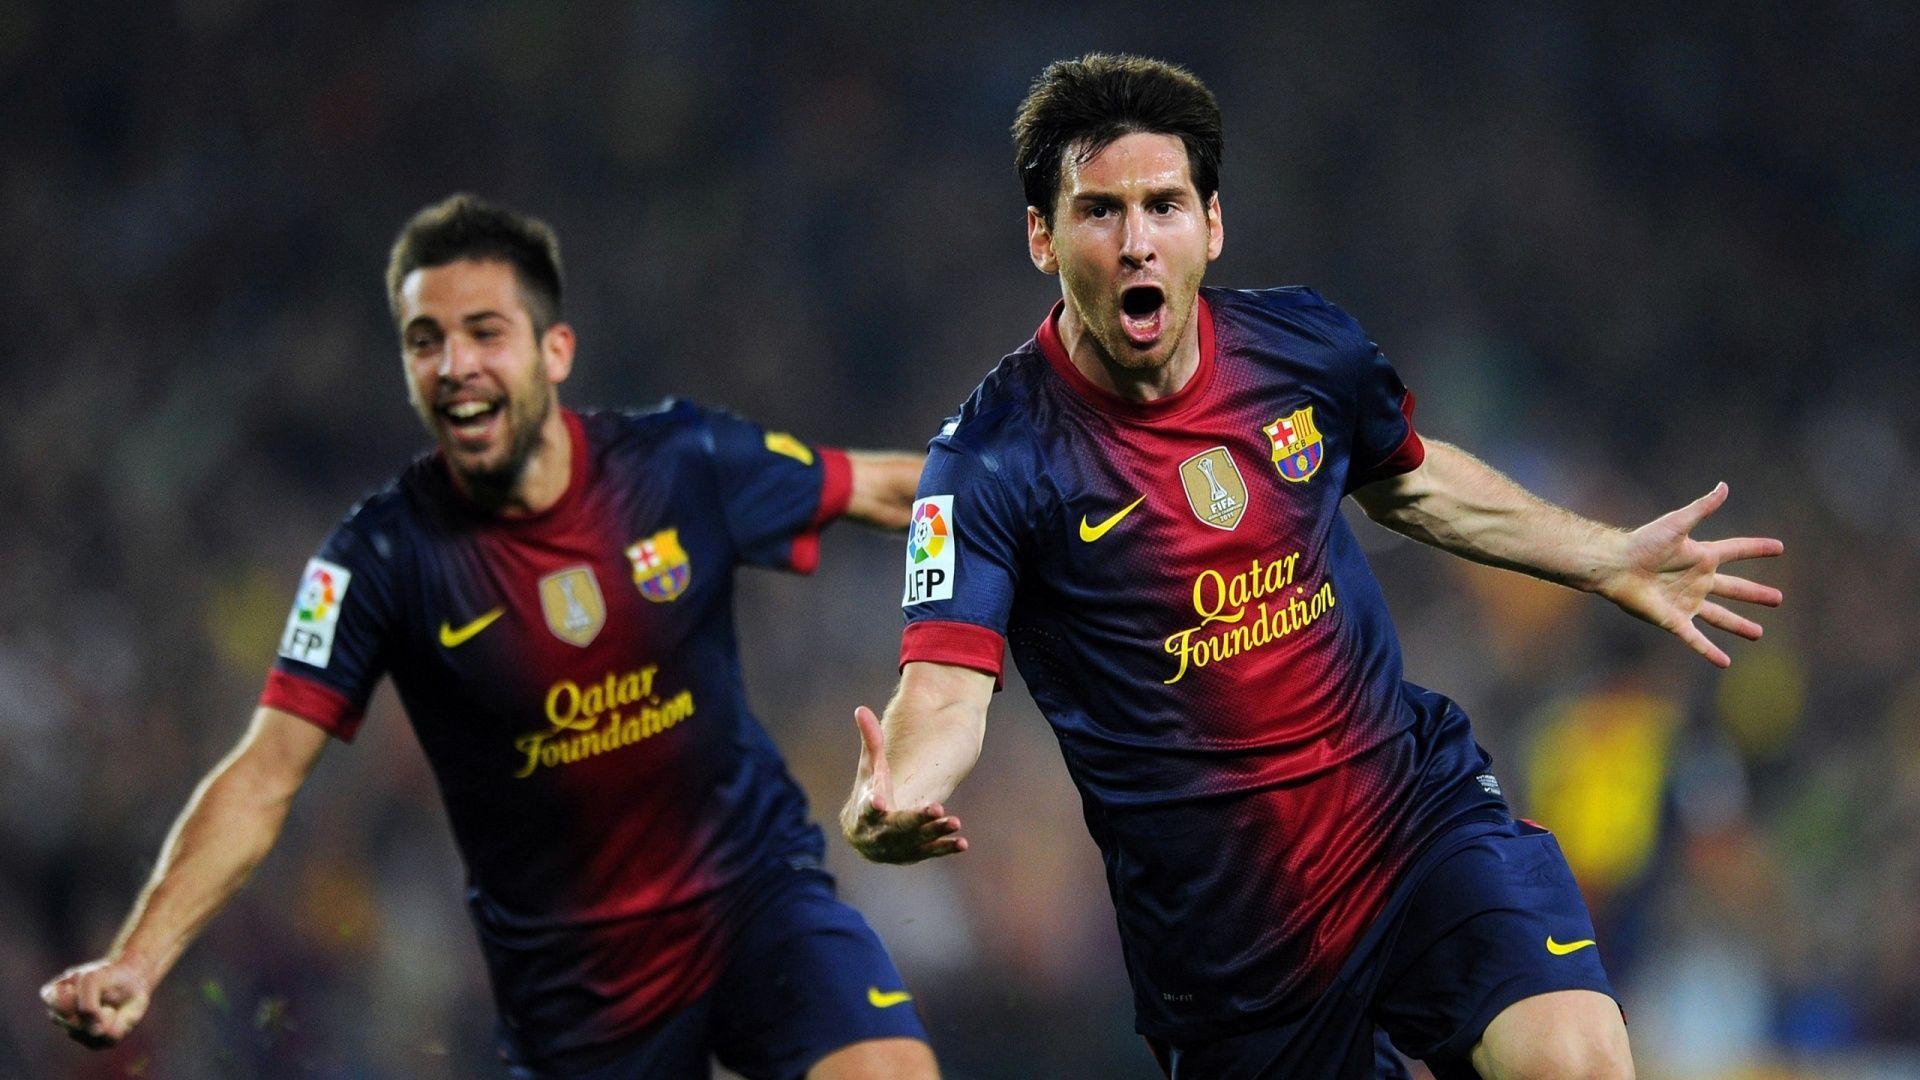 Lionel Messi And Jordi Alba Fifa World Cup 2014 Wallpaper